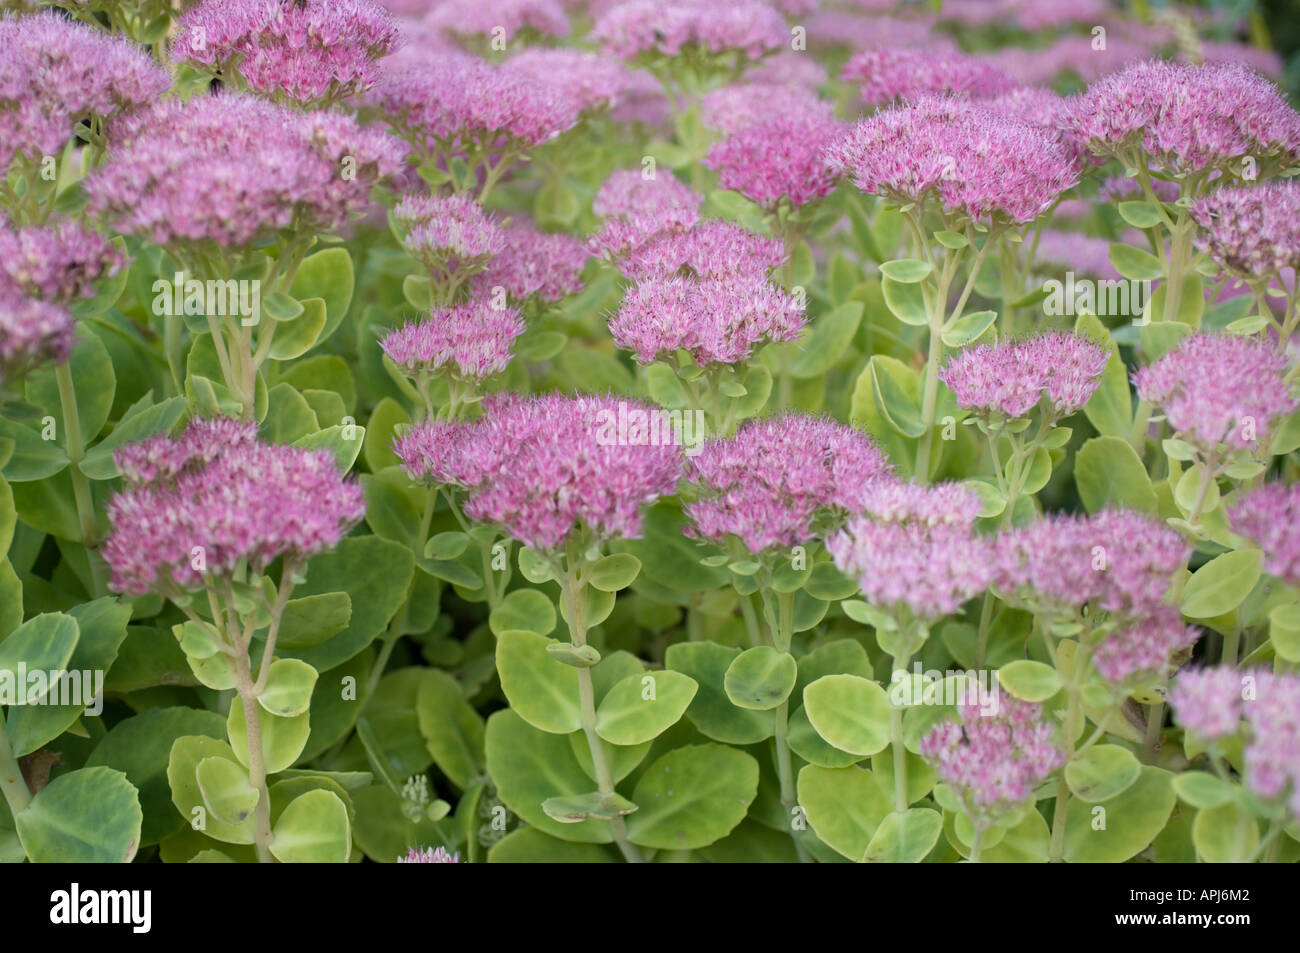 Usine à glace stonecrop Sedum spectabile famille des crassulaceae originaire de Chine et de Corée Banque D'Images